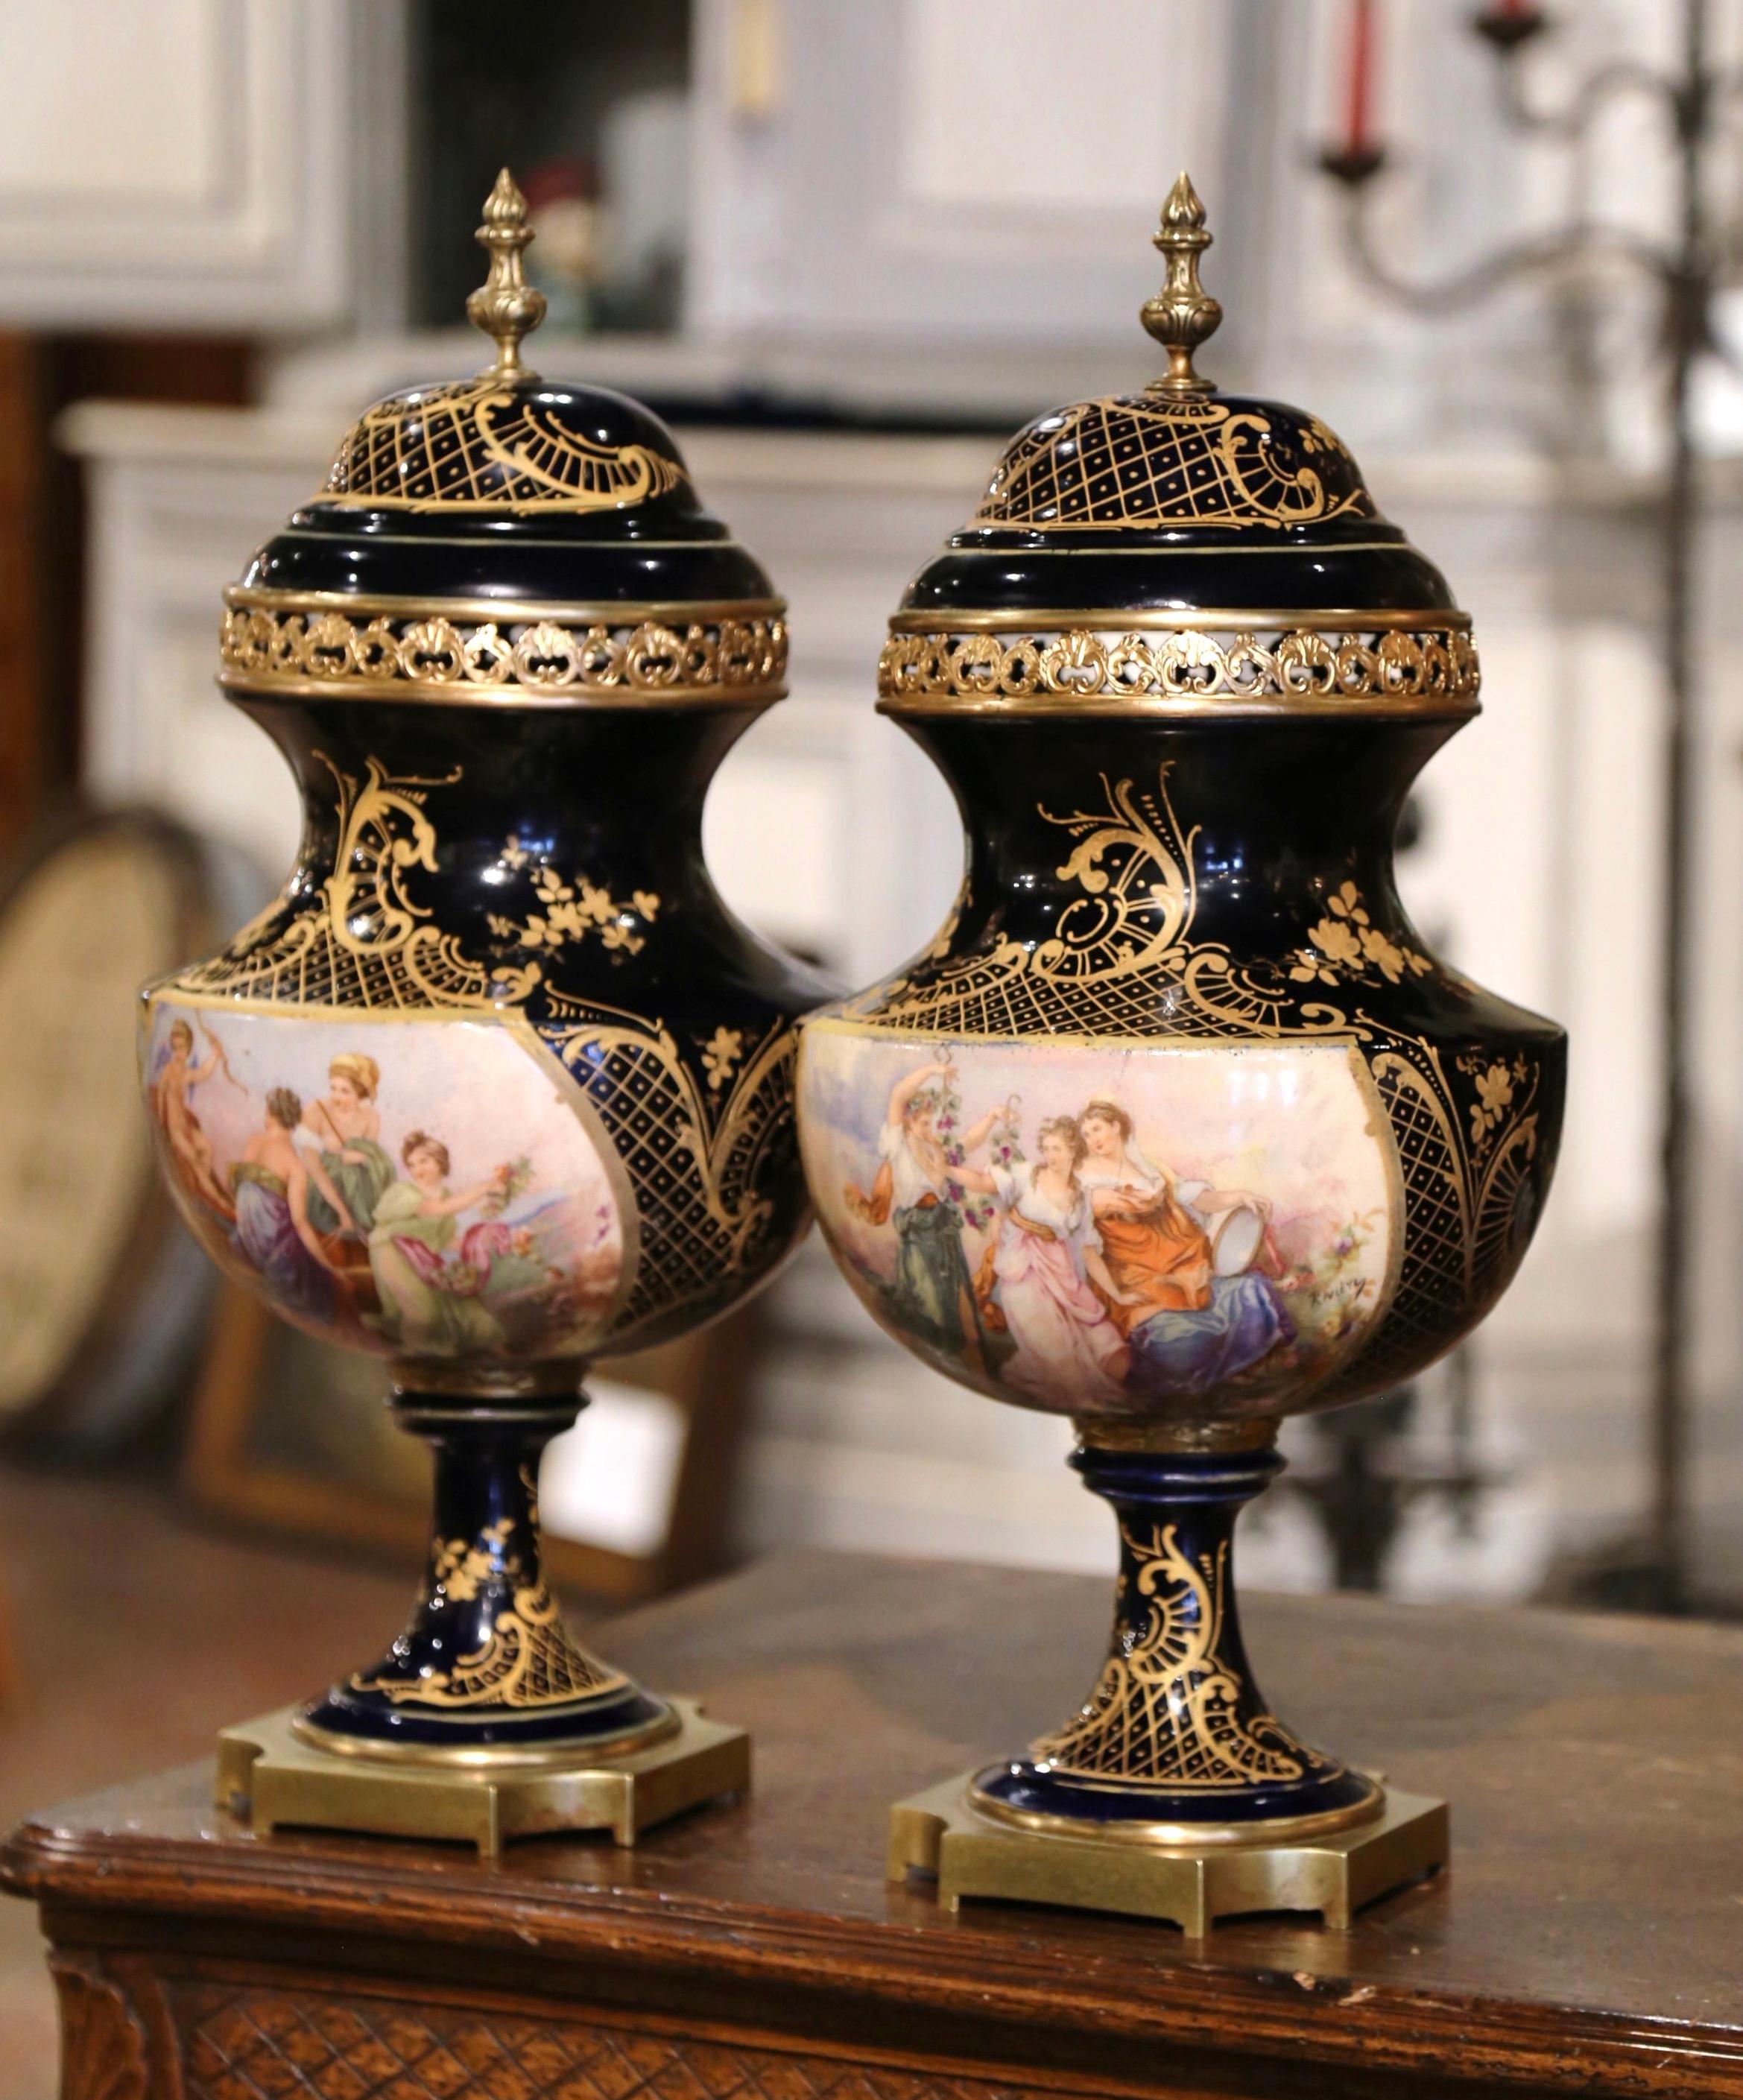 Décorez une cheminée ou une console avec cette importante paire d'urnes anciennes de Sèvres. Créé à Paris, en France, vers 1890, chaque vase élégant repose sur une base carrée en bronze doré à coins coupés. Le grand vase en porcelaine est décoré